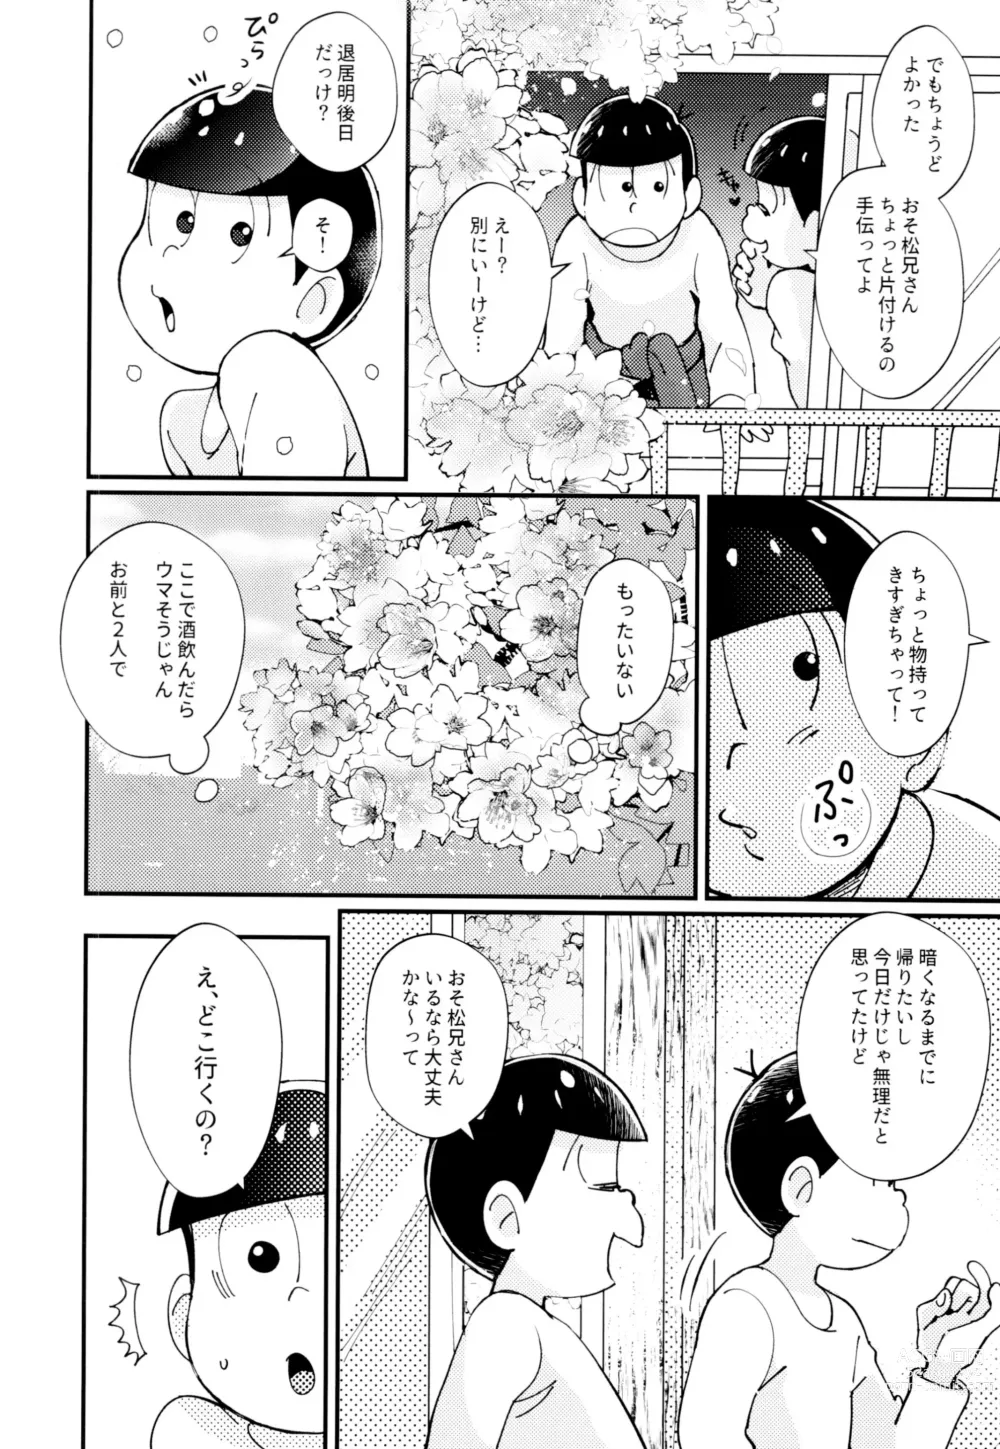 Page 10 of doujinshi 2-haku 3-kka, Kimi to Sakurasaku Apart de